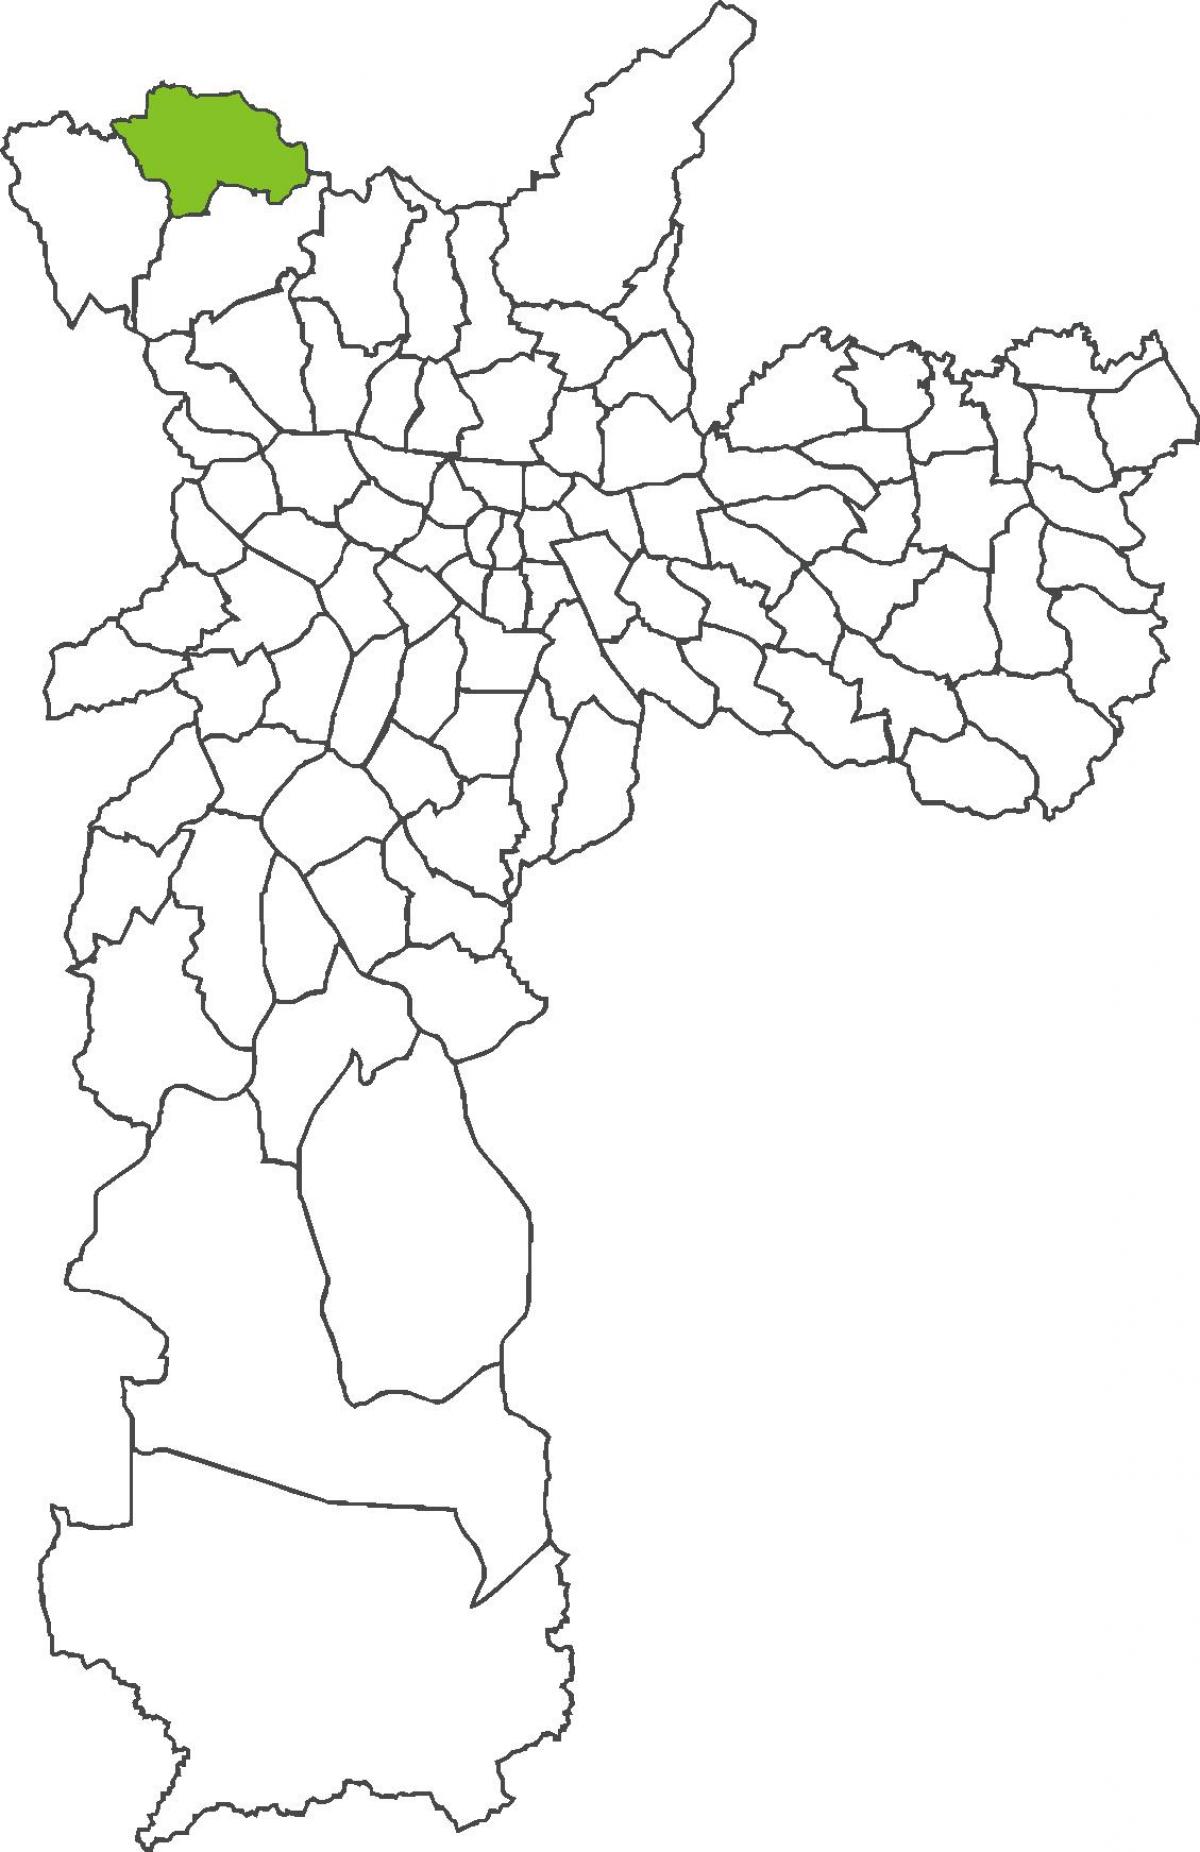 Peta Perus daerah